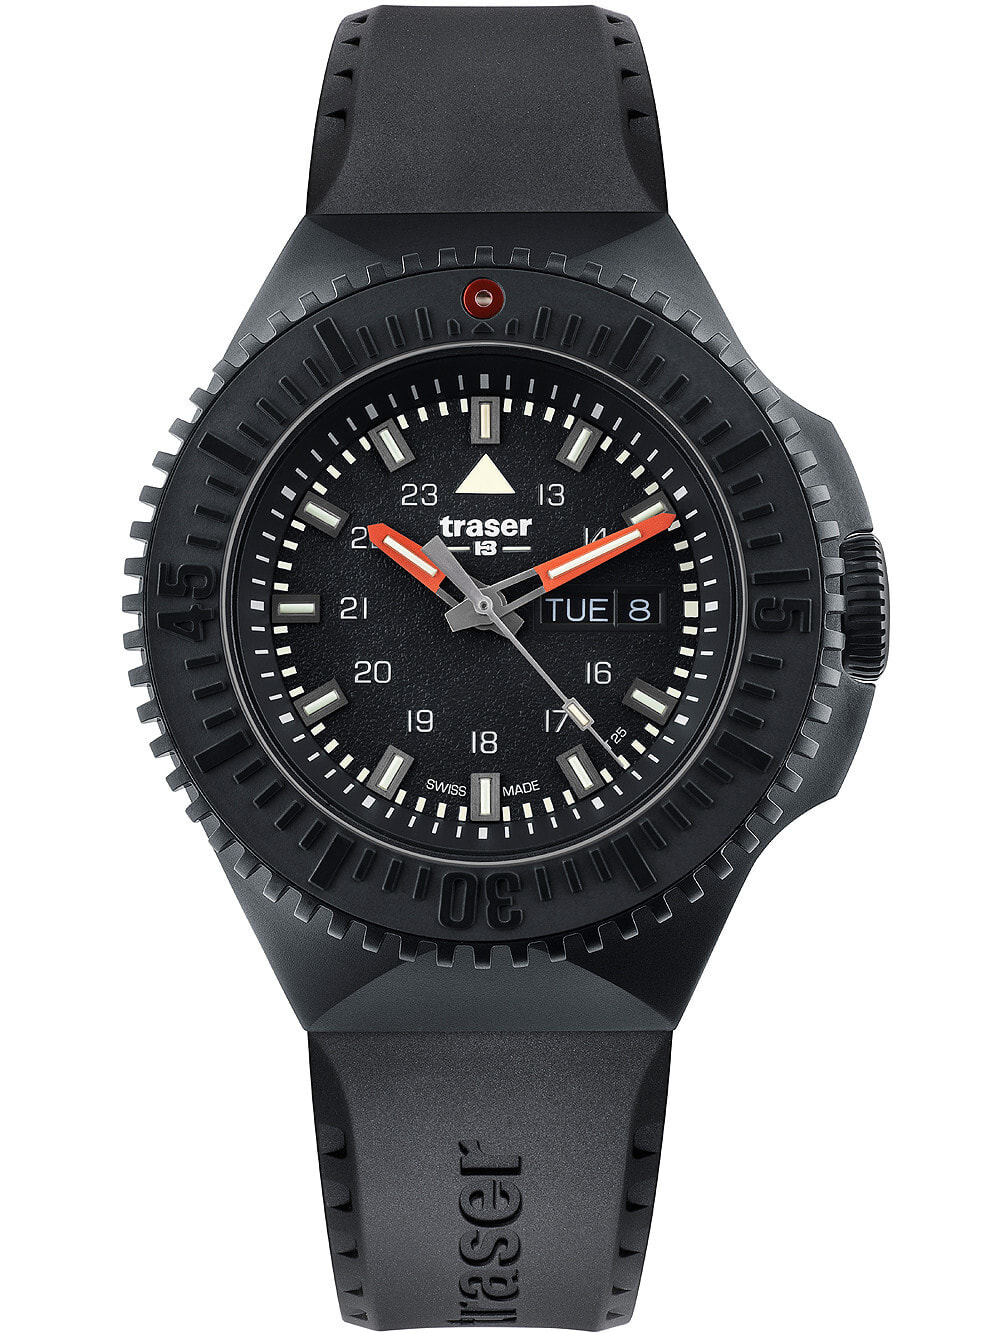 Мужские наручные часы с черным силиконовым ремешком Traser H3 109855 P69 Black-Stealth Black 46mm 20ATM